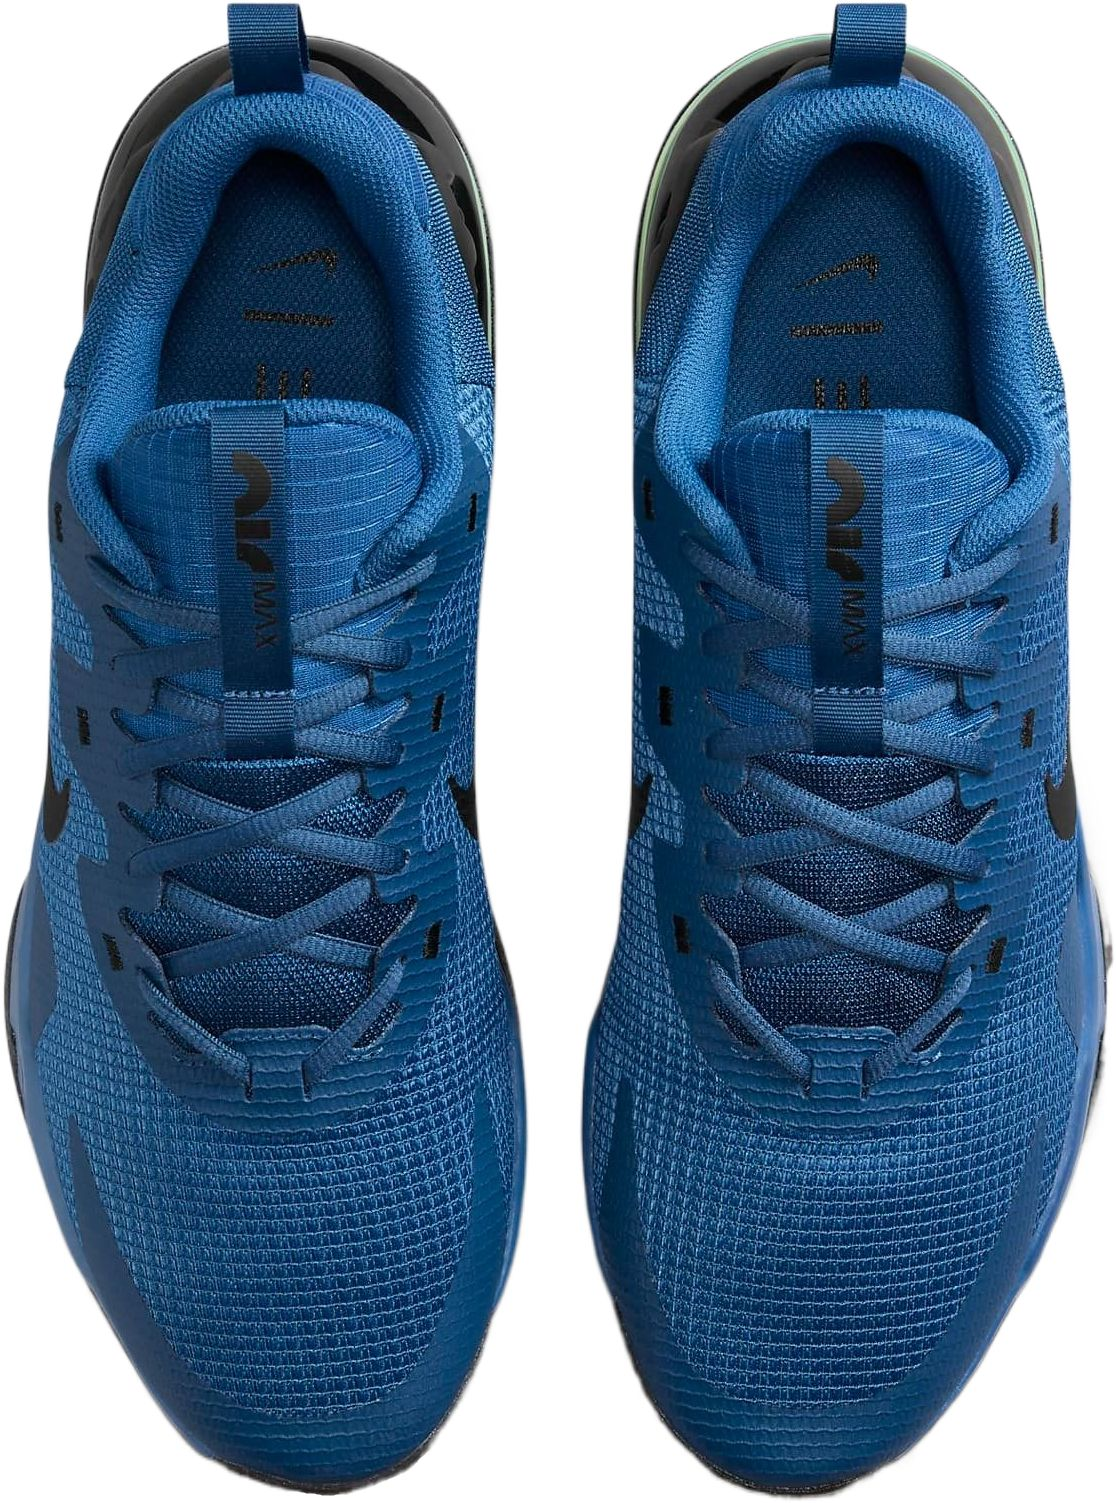 Кроссовки мужские Nike Air Max Alpha Trainer 5 DM0829-403 43 (9.5 US) синие фото 4